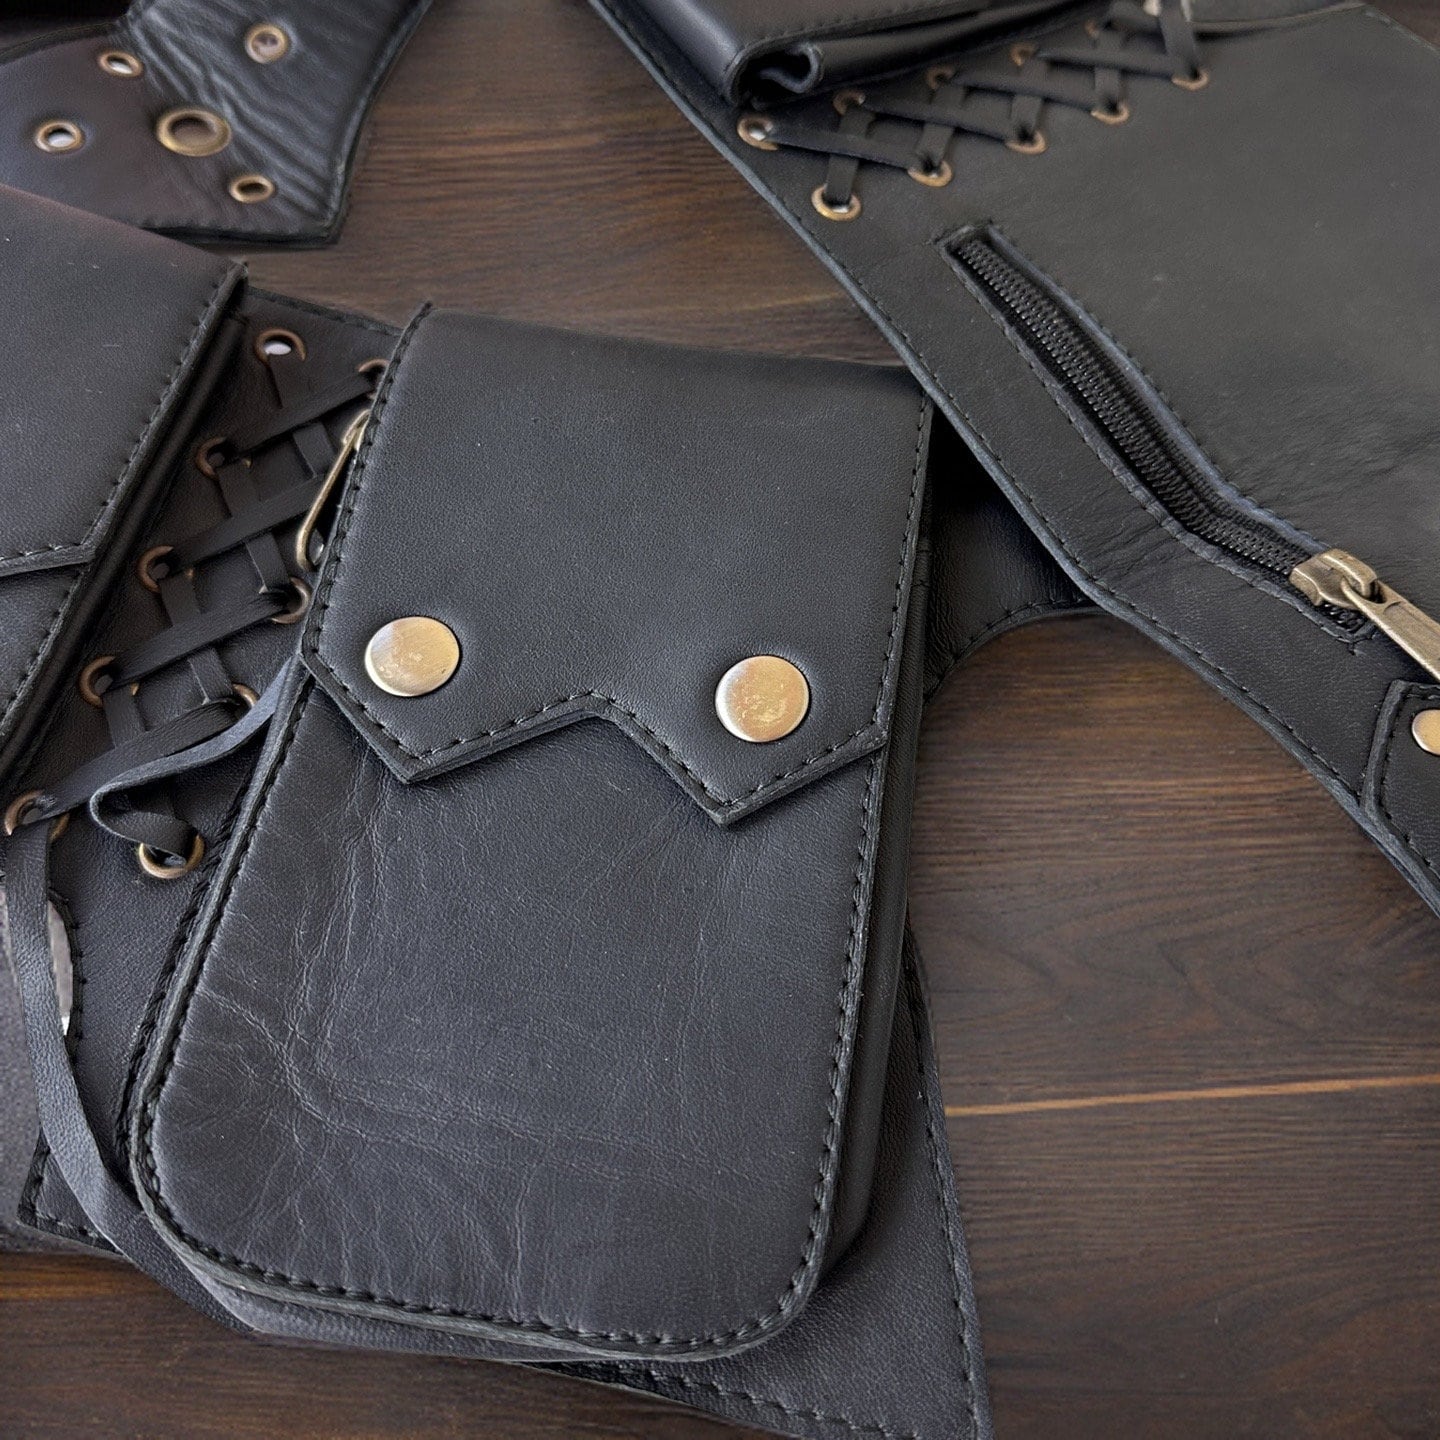 UPDATED Genuine Leather Utility Belt | Black, 5 pockets | fanny pack travel belt, festival, party purse, vendor belt, money belt